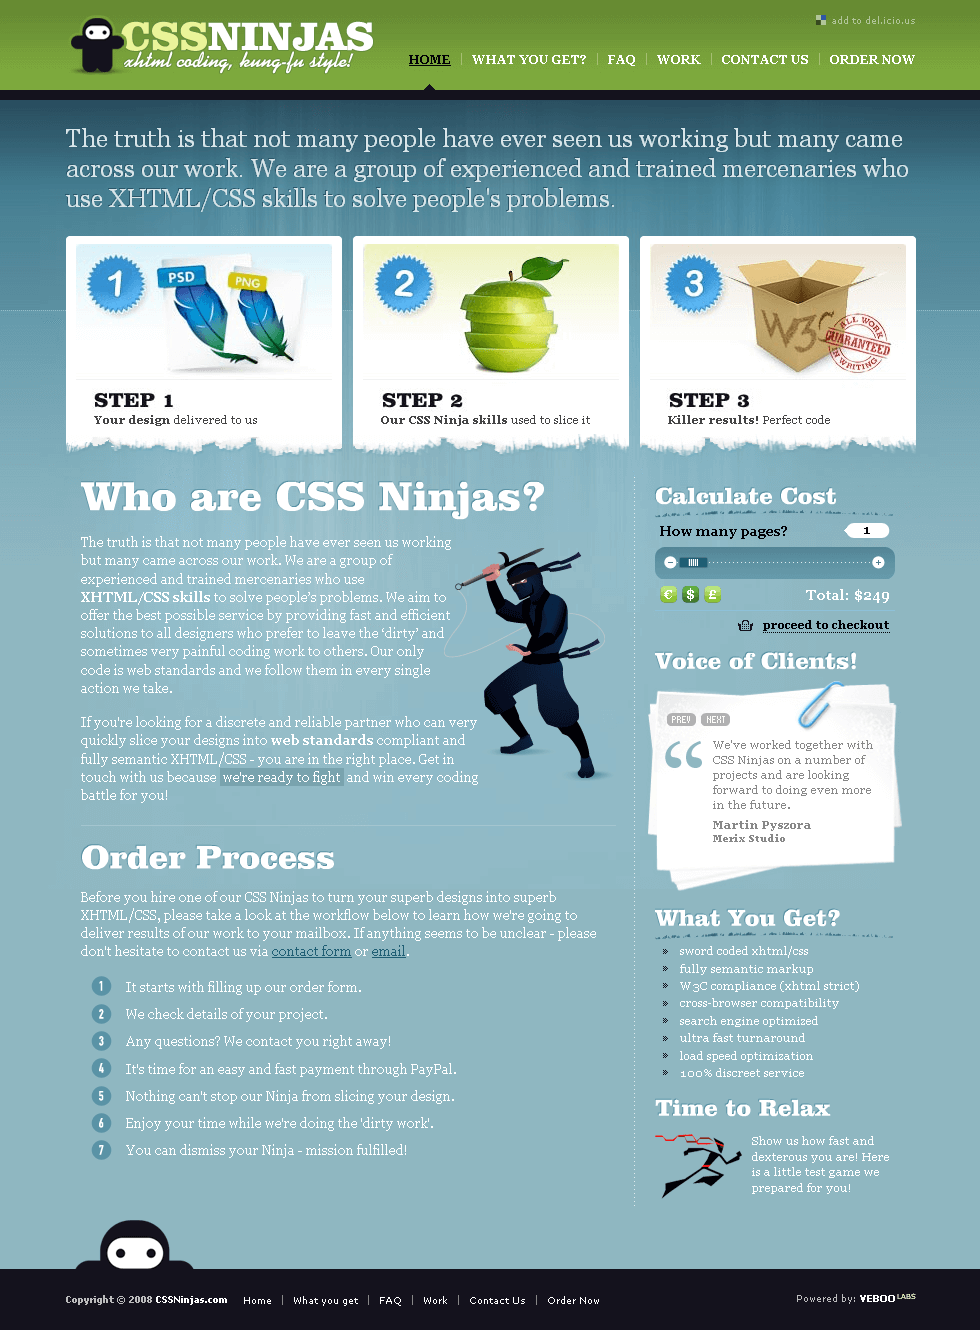 CSS Ninjas in 2008